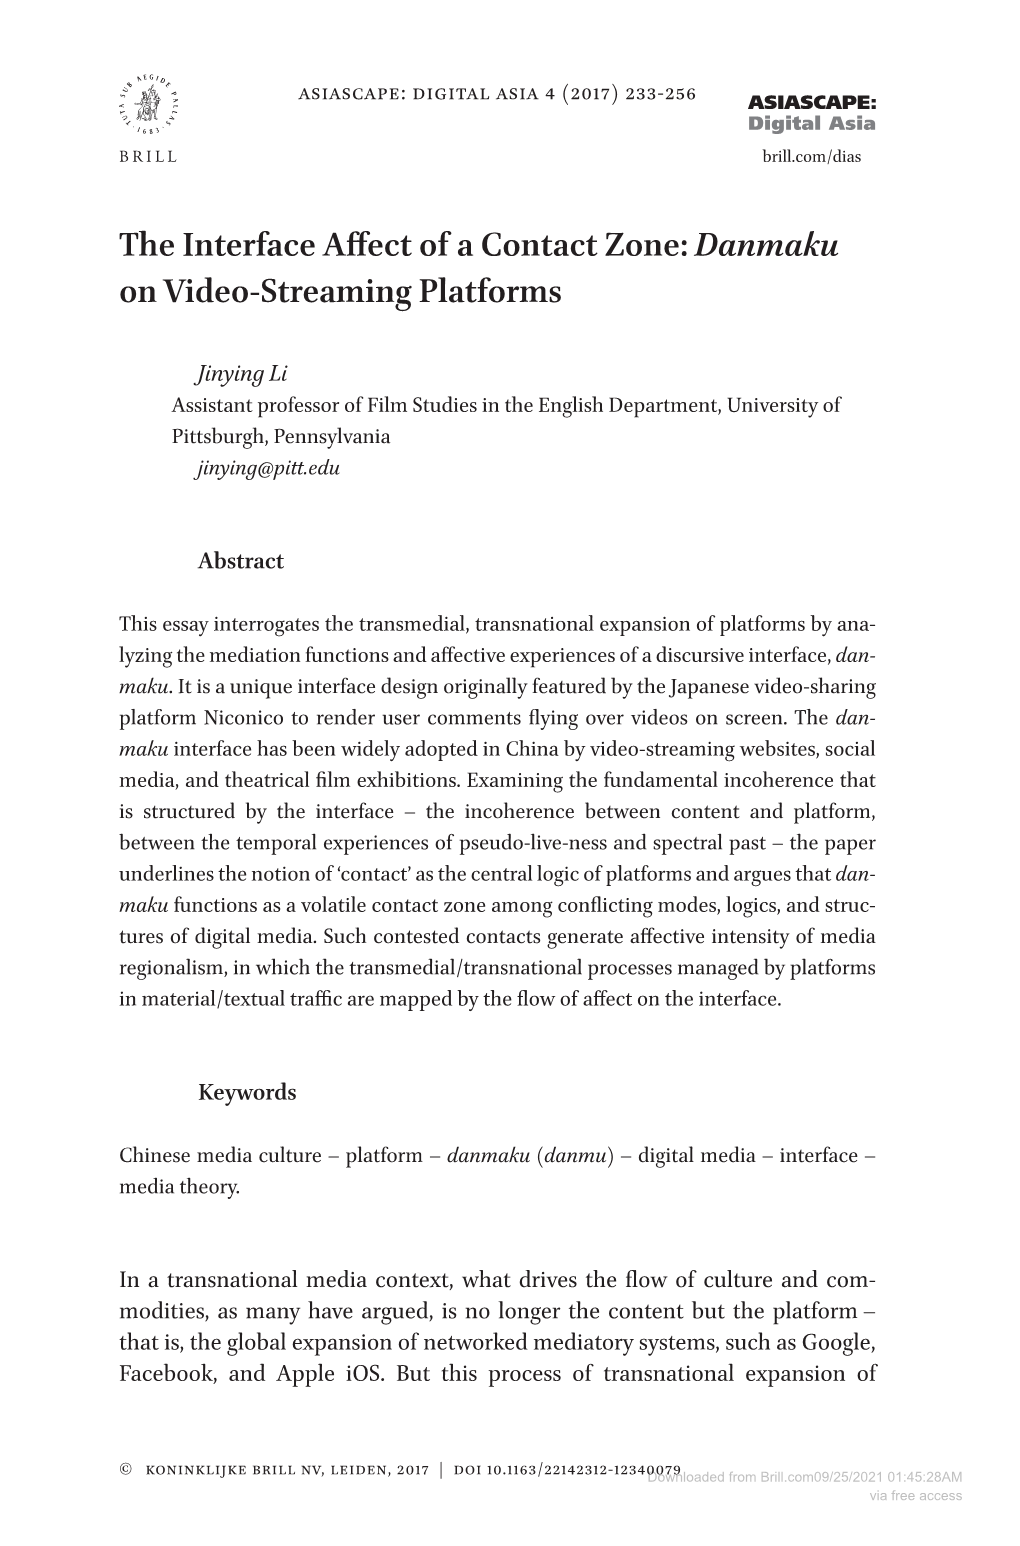 Danmaku on Video-Streaming Platforms